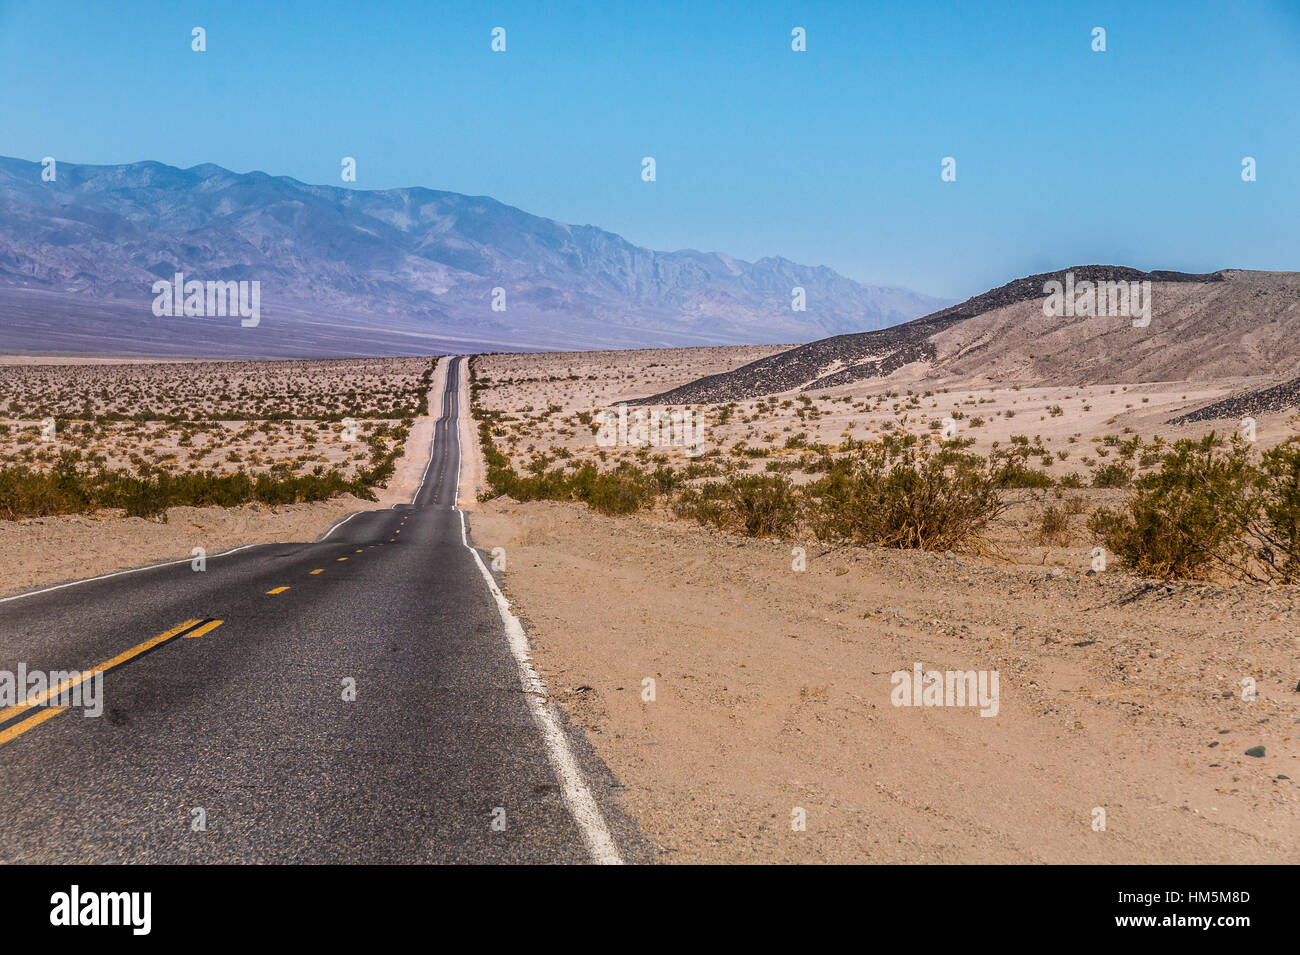 Endlose US Highway zum Death Valley Nationalpark, Kalifornien - Bild auf einem Motorrad Roadtrip durch den Westen der USA Stockfoto